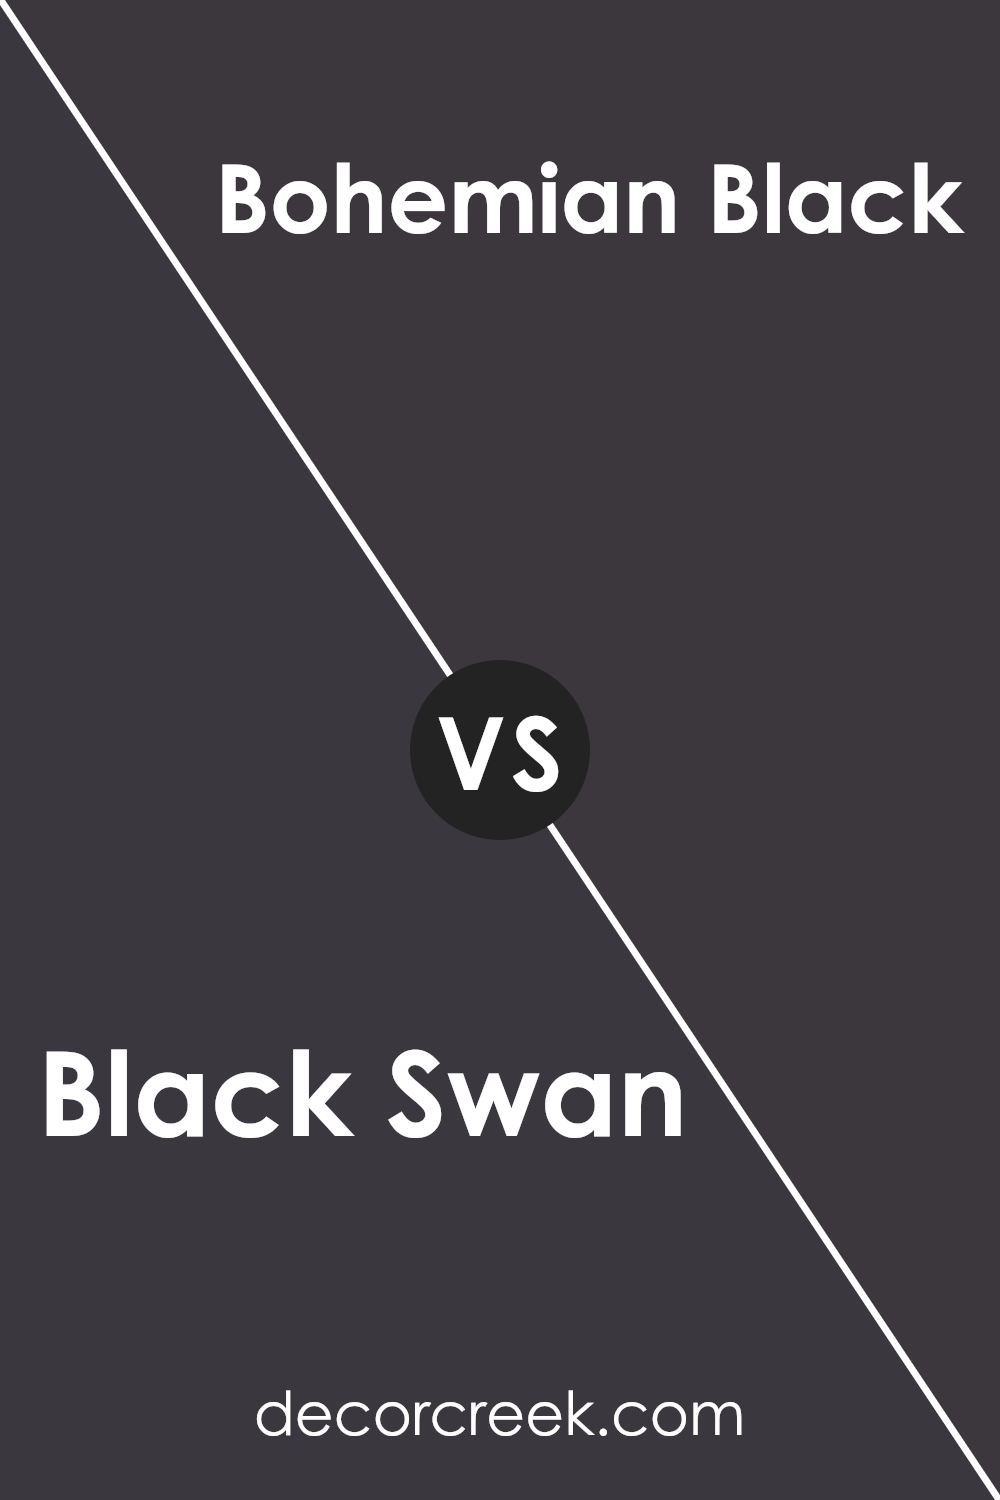 black_swan_sw_6279_vs_bohemian_black_sw_6988